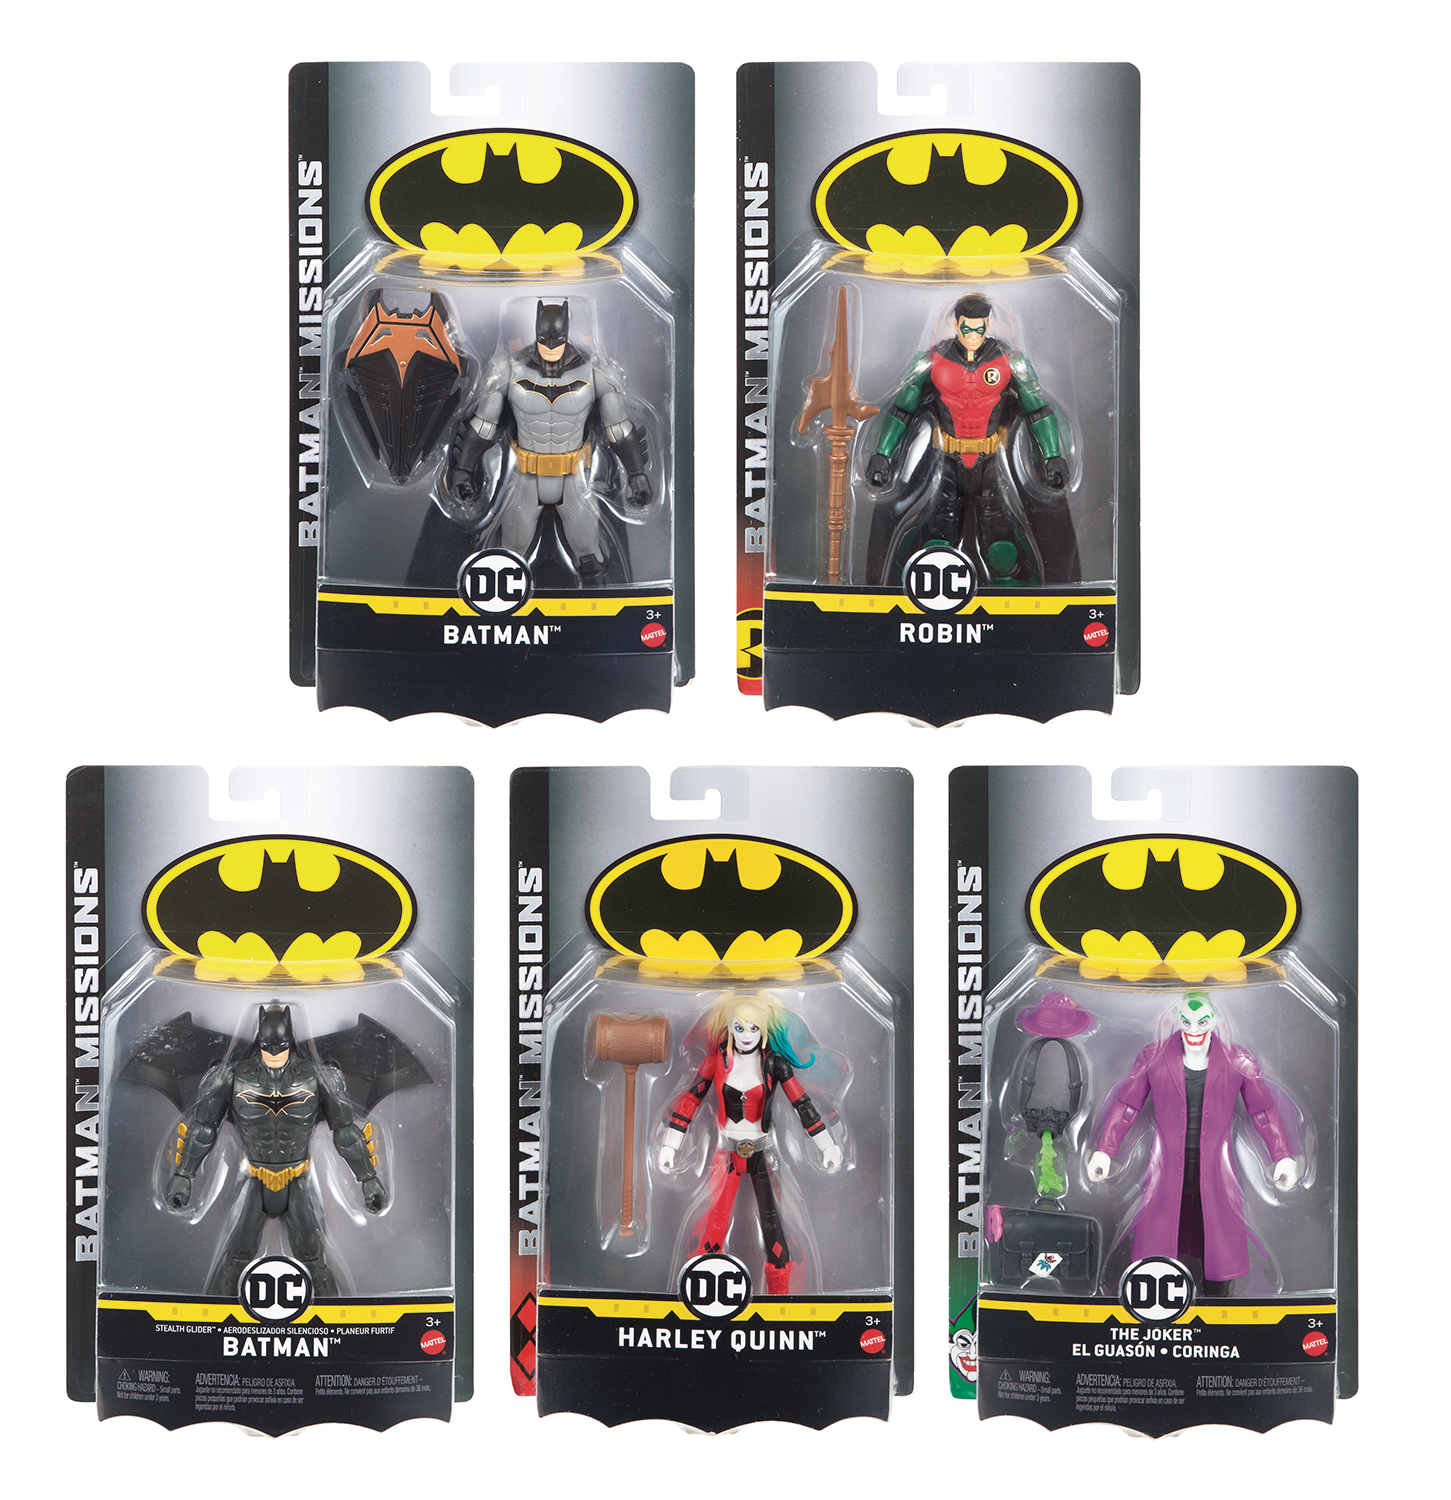 batman knight missions toys